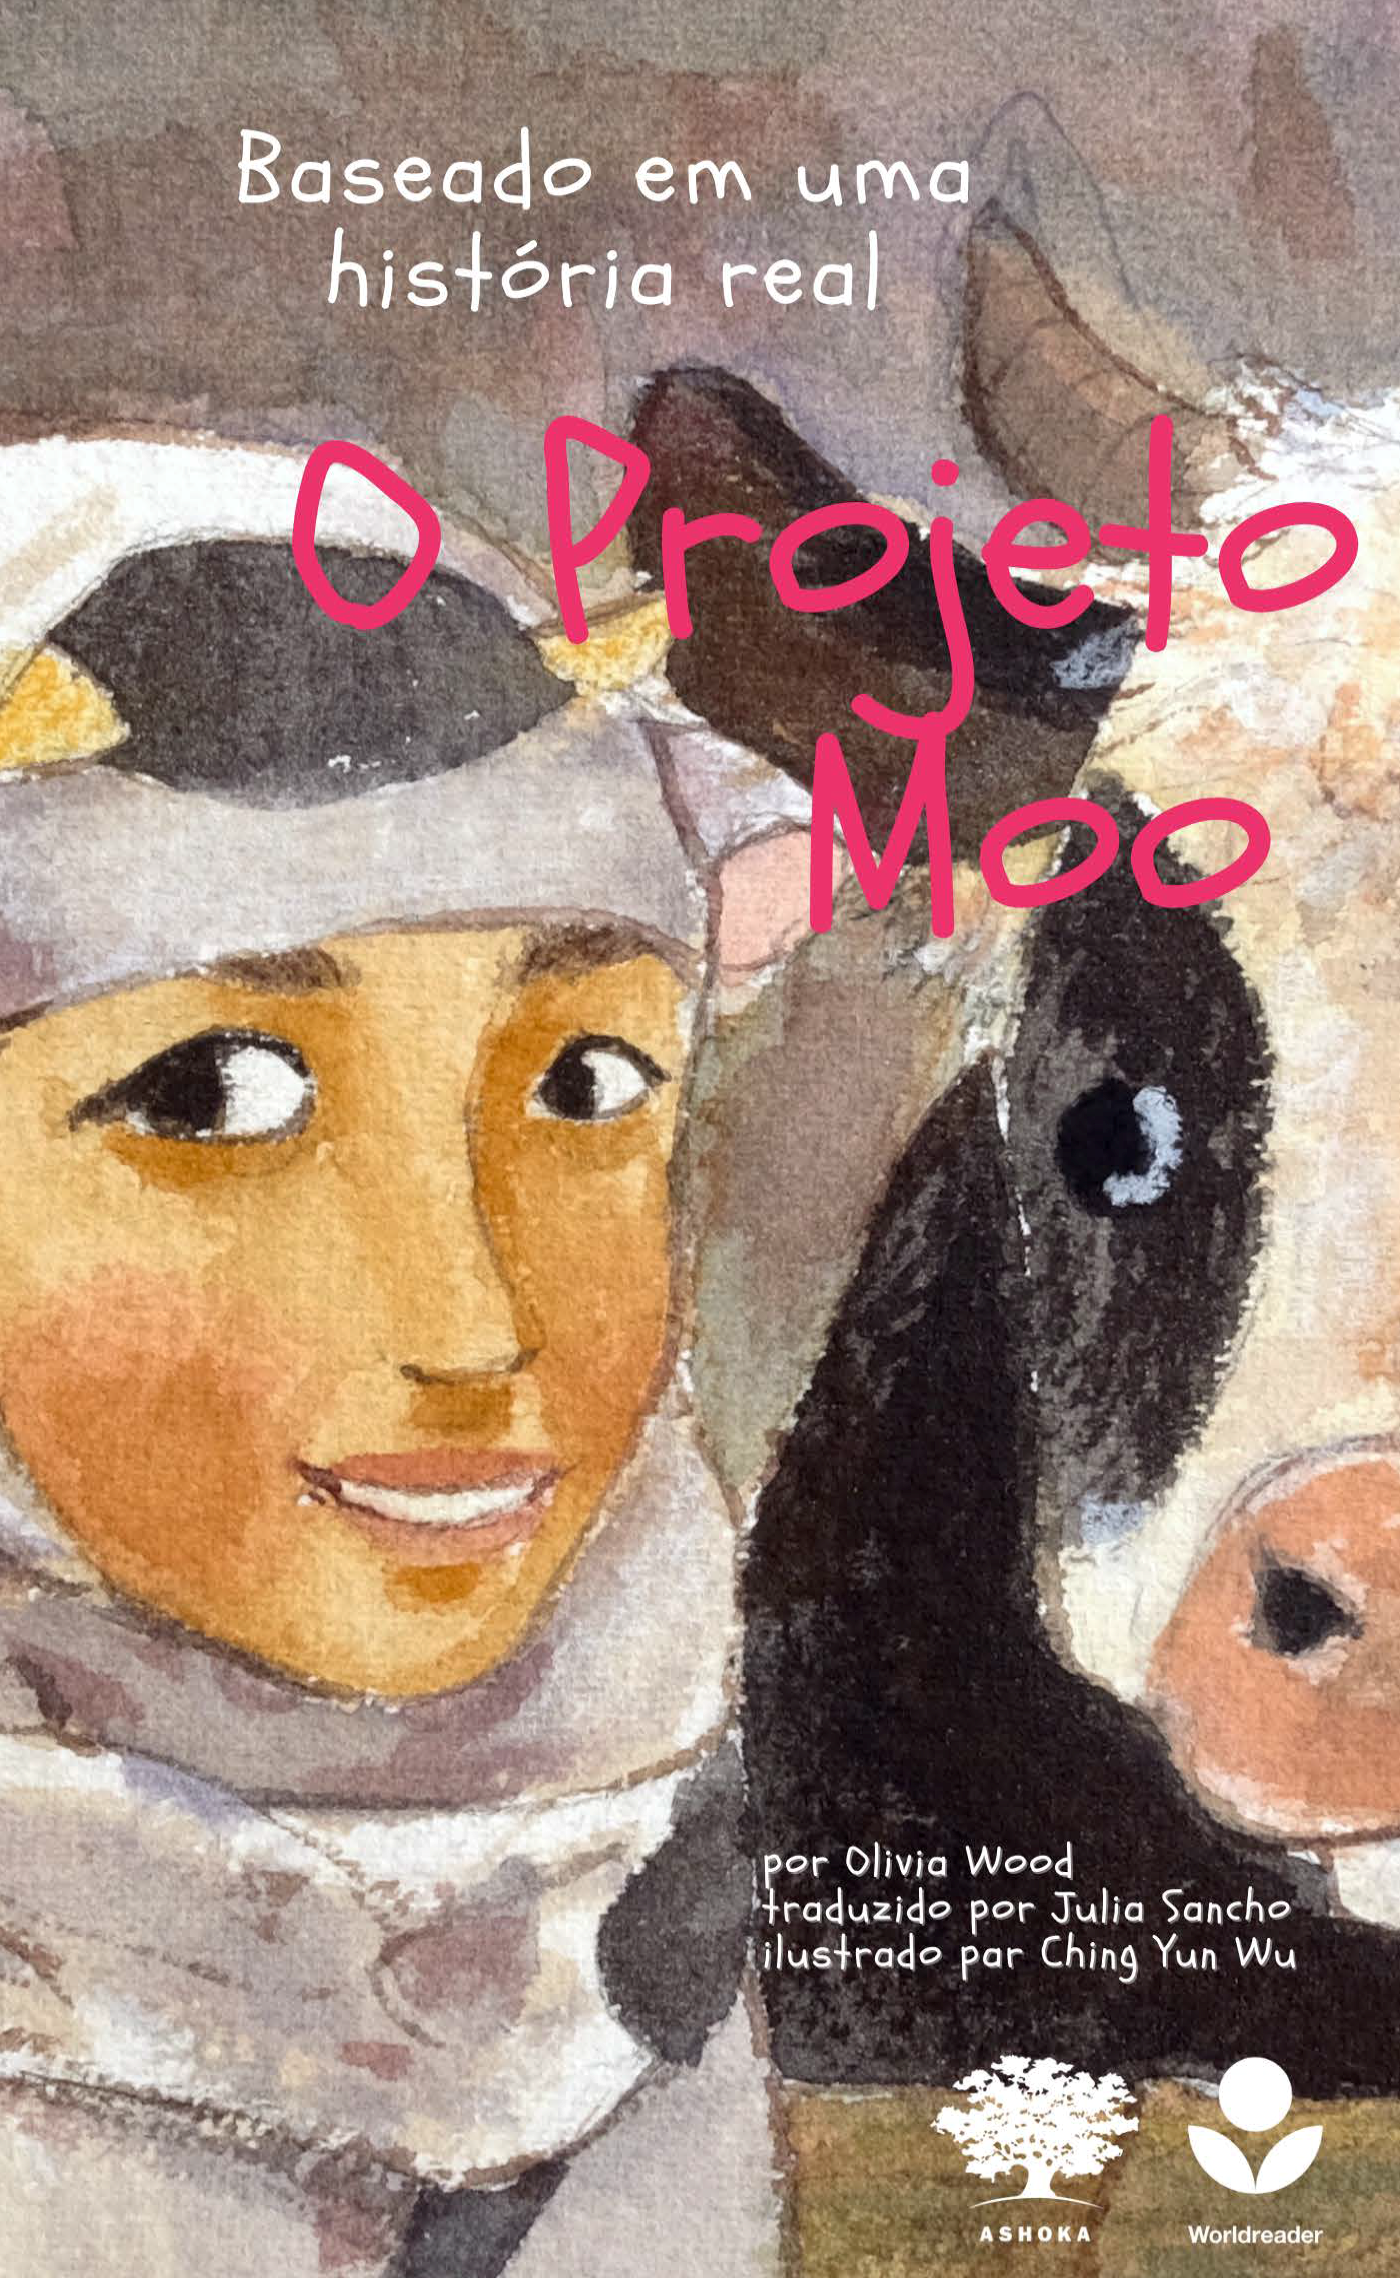 Capa do livro "O Projeto Moo". Há uma ilustração de uma menina sorrindo ao lado de uma vaca.